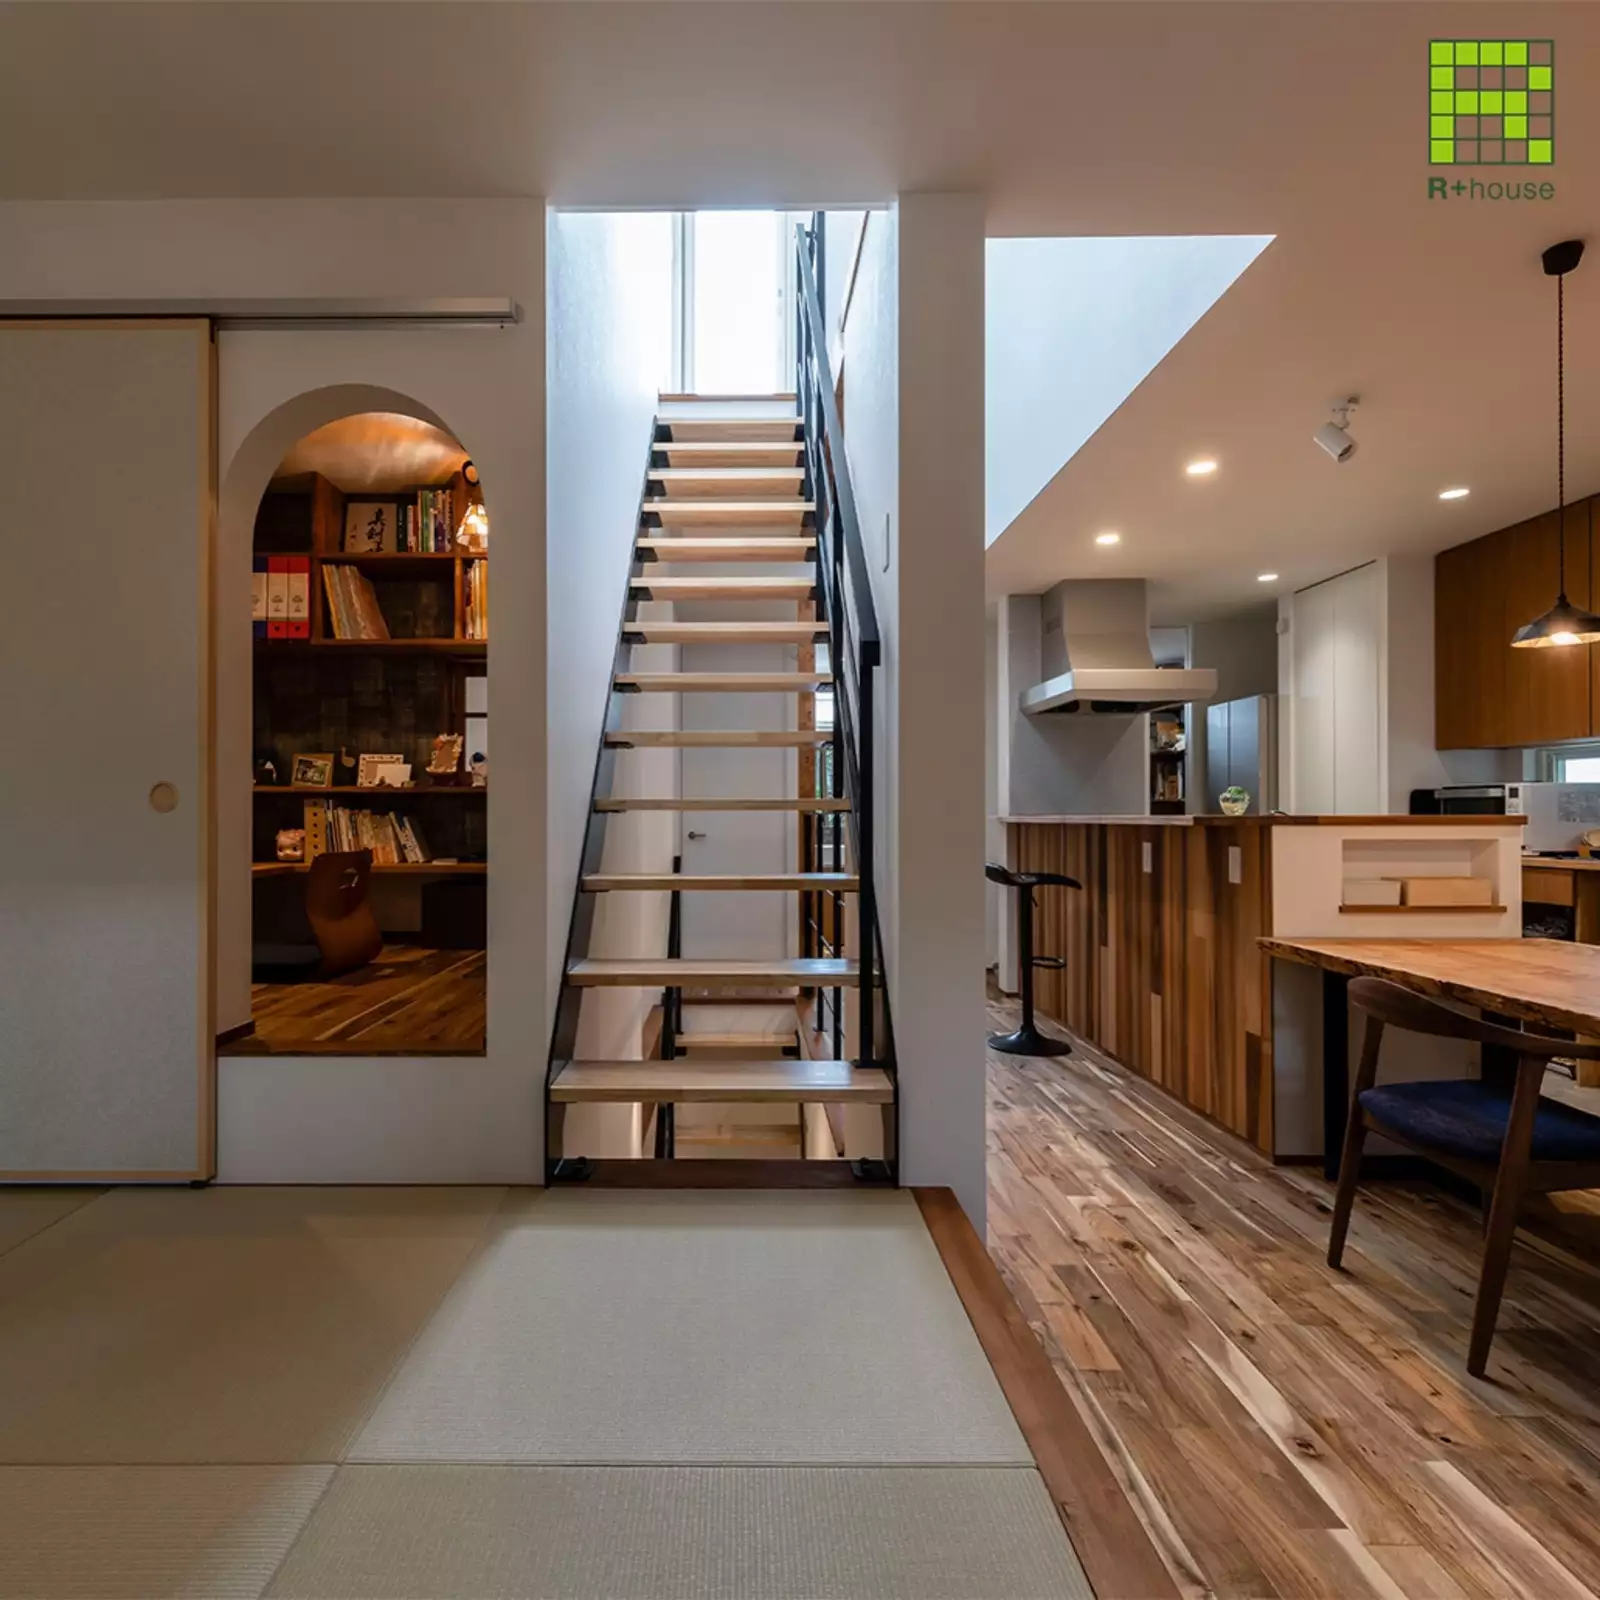 R+houseの物件の畳スペースの写真です。左側には小さめの書斎への入り口、横には階段右側にはダイニングキッチンがある。